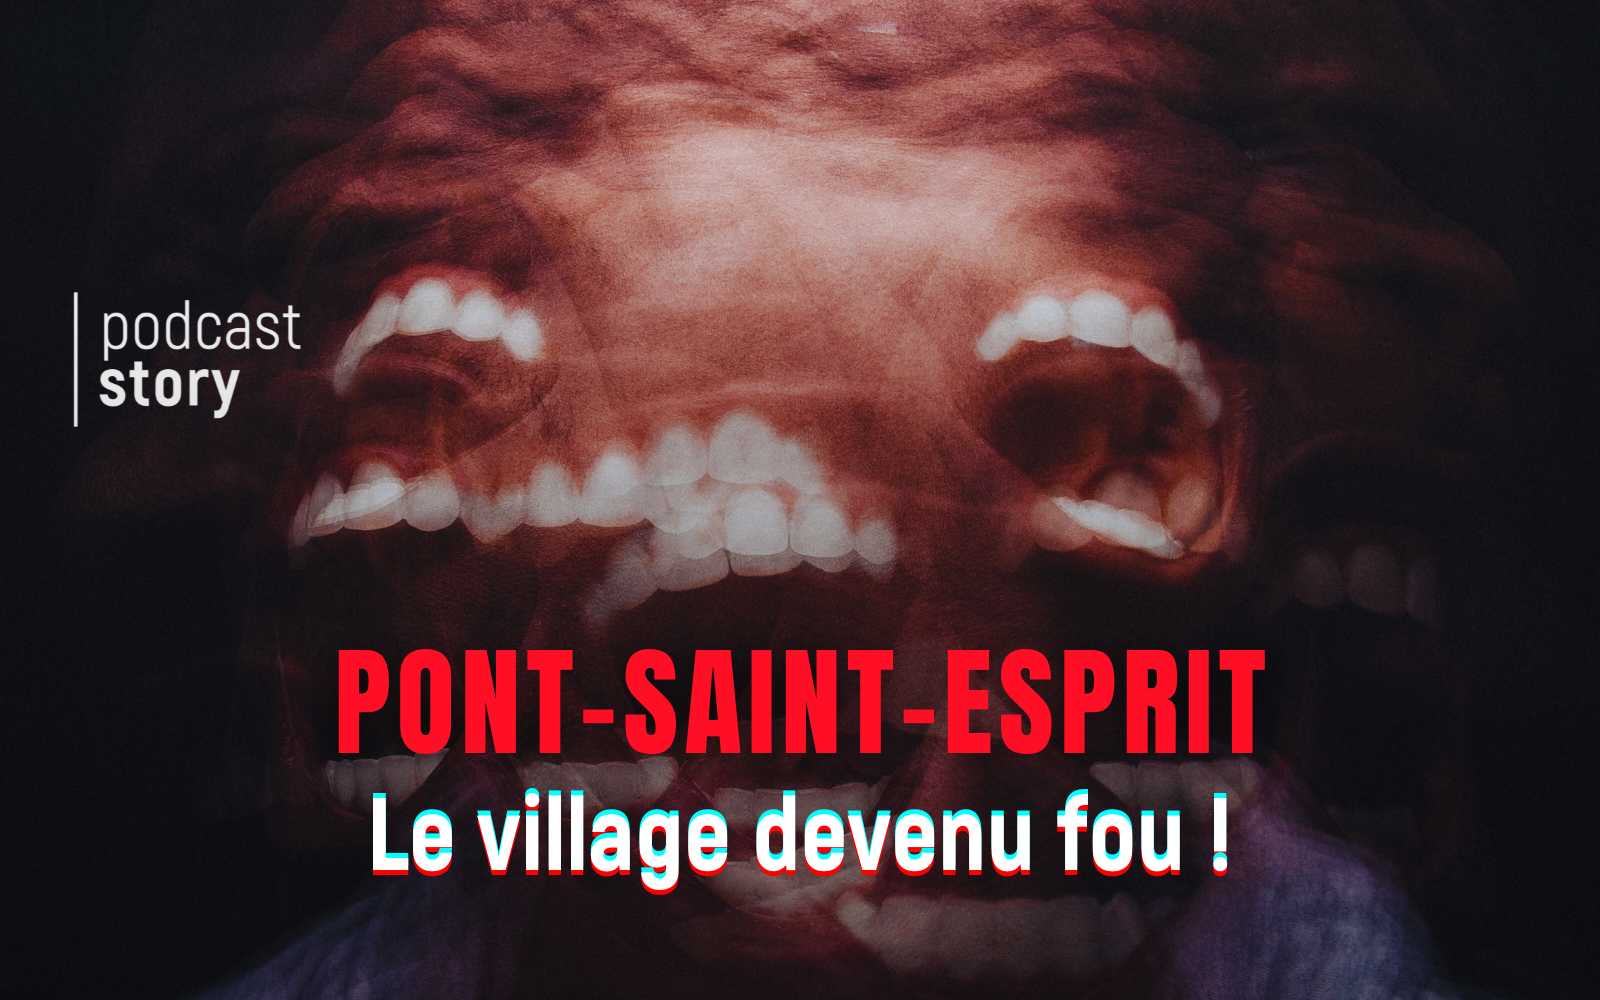 PONT-SAINT-ESPRIT, Le village devenu fou !